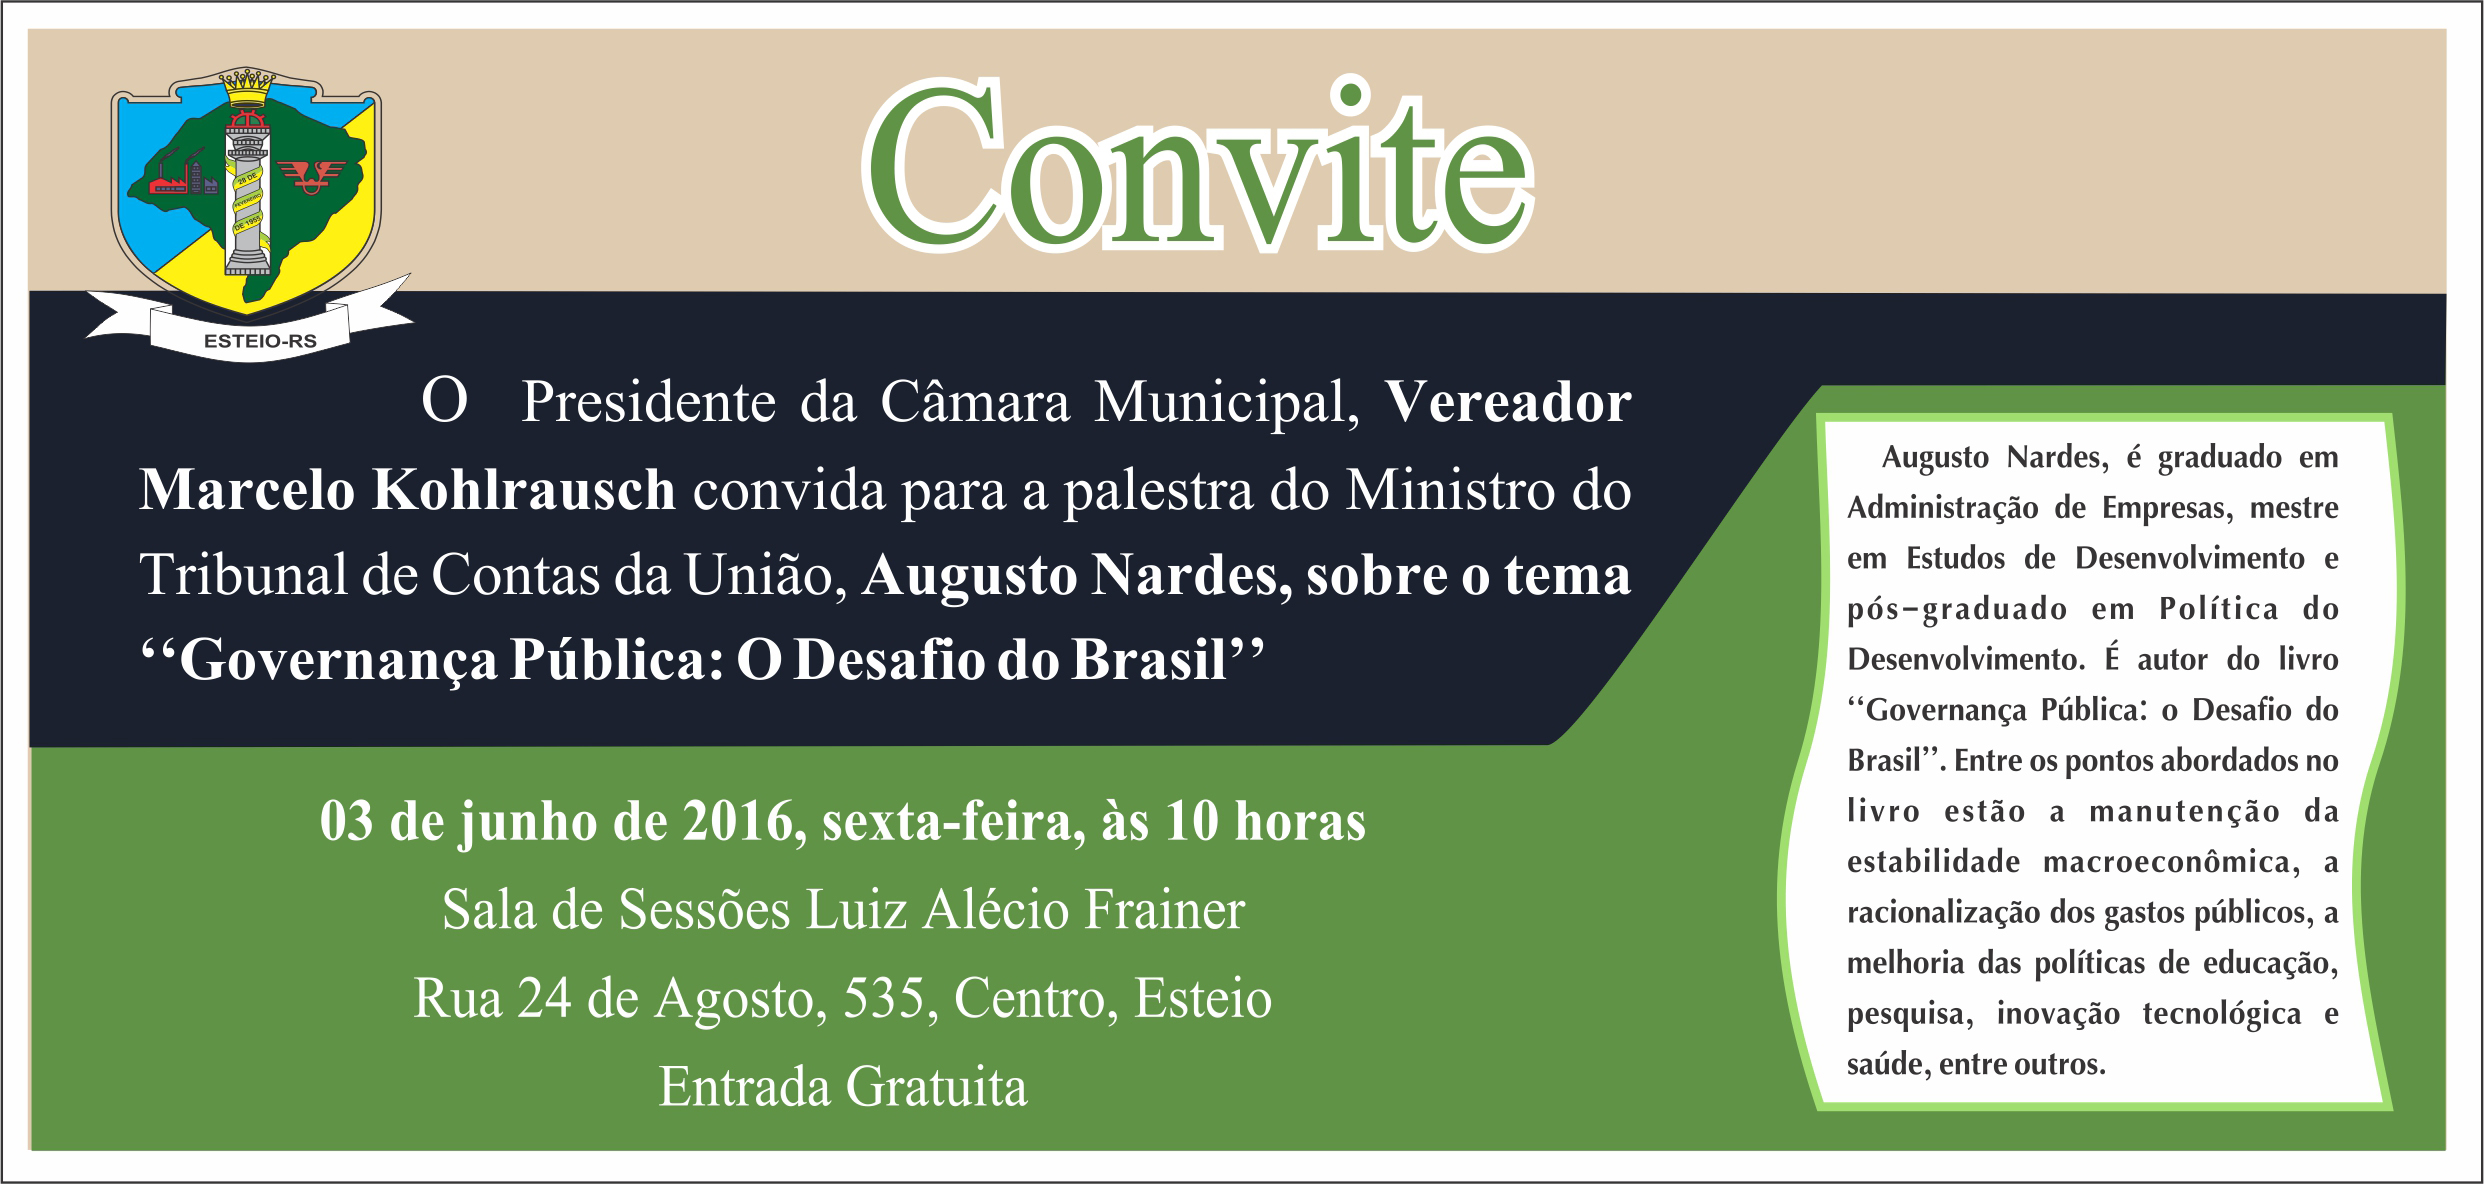 Ministro Augusto Nardes vai palestrar sobre Governança Pública na Câmara de Vereadores amanhã